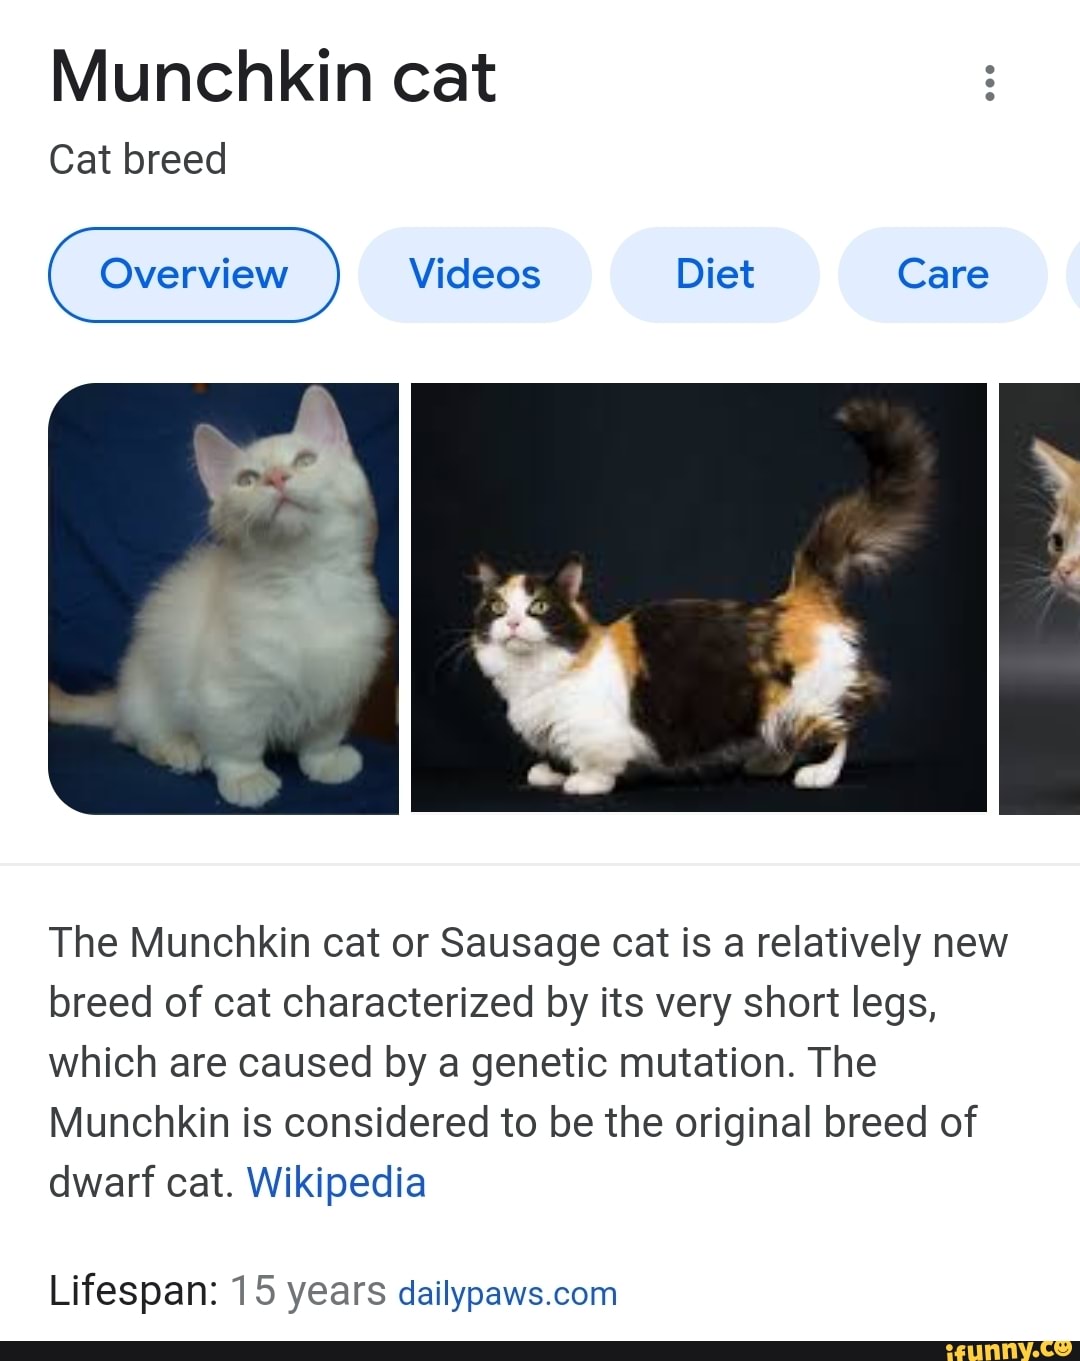 Munchkin cat - Wikipedia